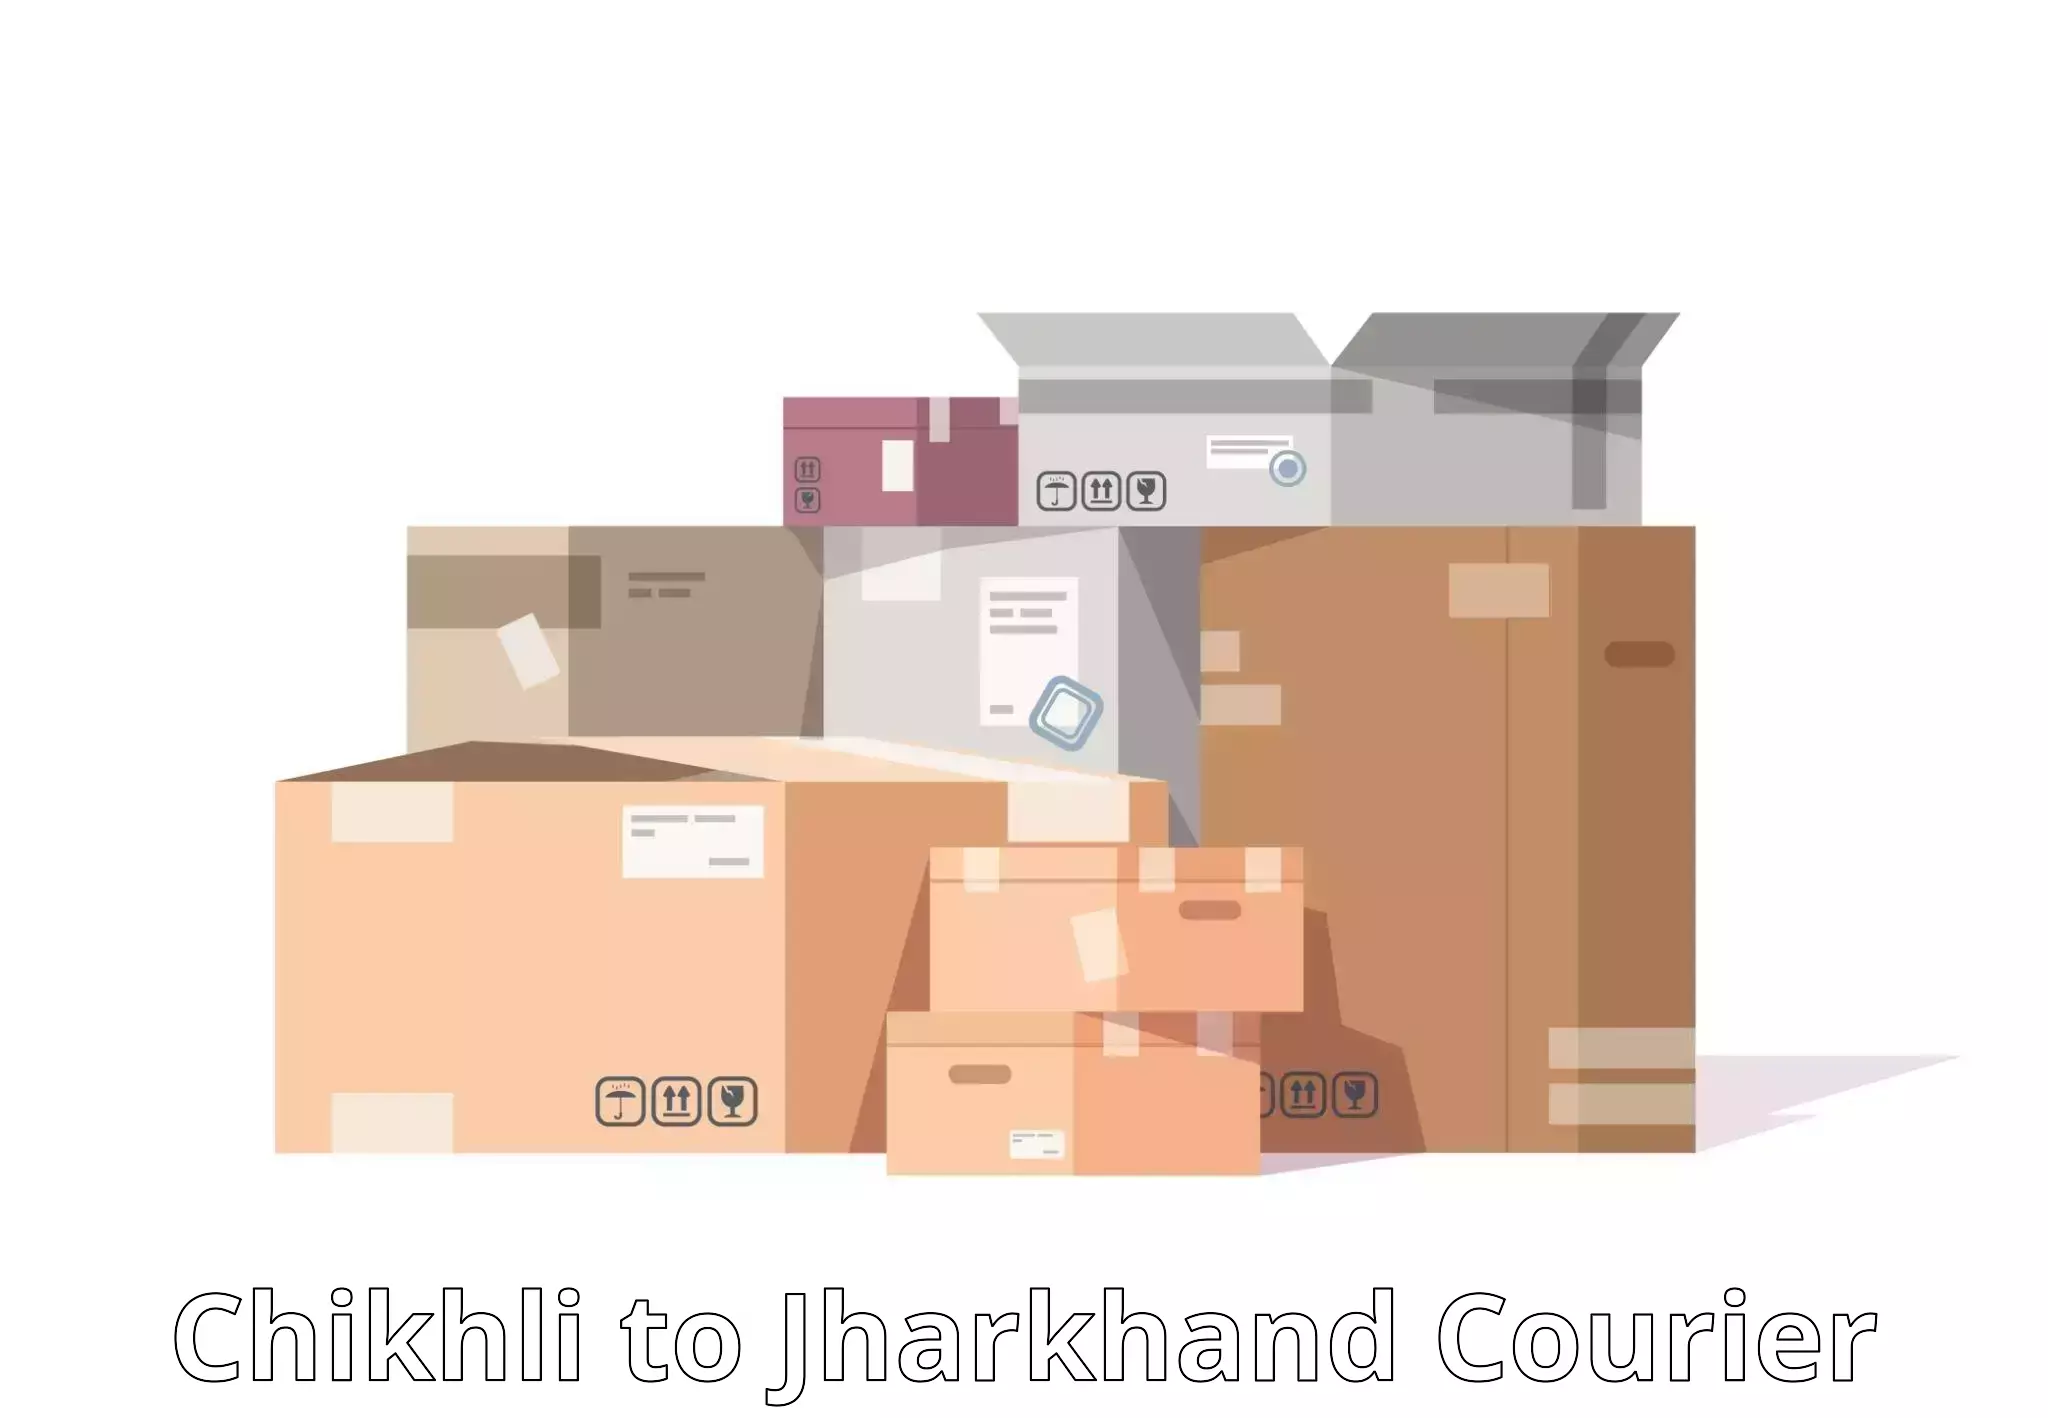 Efficient cargo handling Chikhli to Domchanch